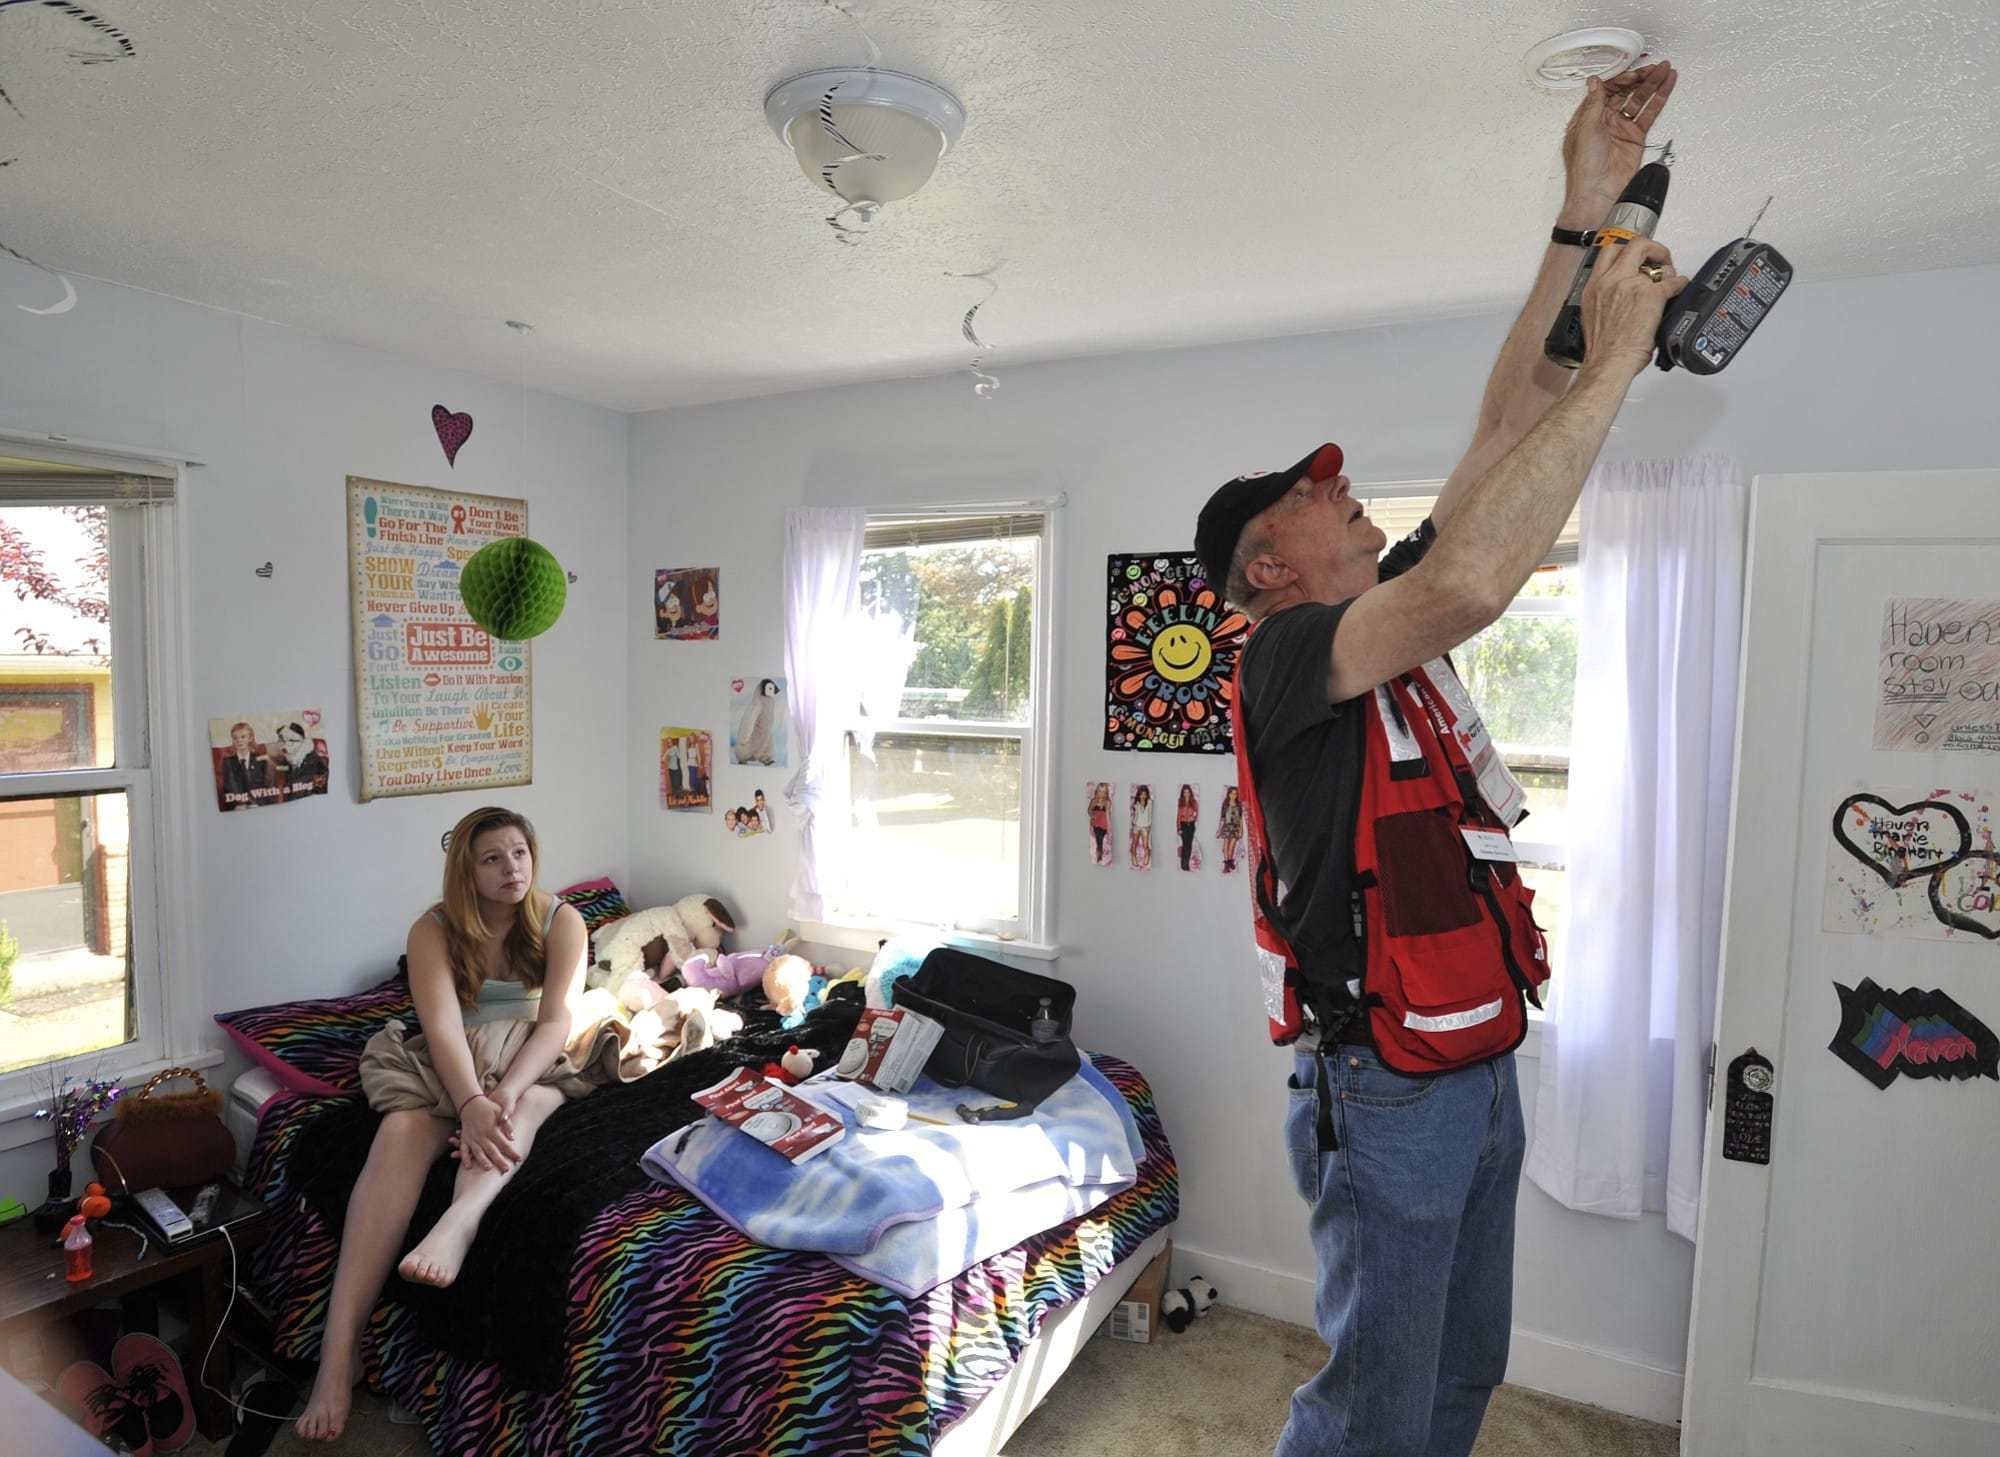 Red Cross volunteer Jeff Kuter installs a smoke alarm in Haven Reinhart's room Saturday.